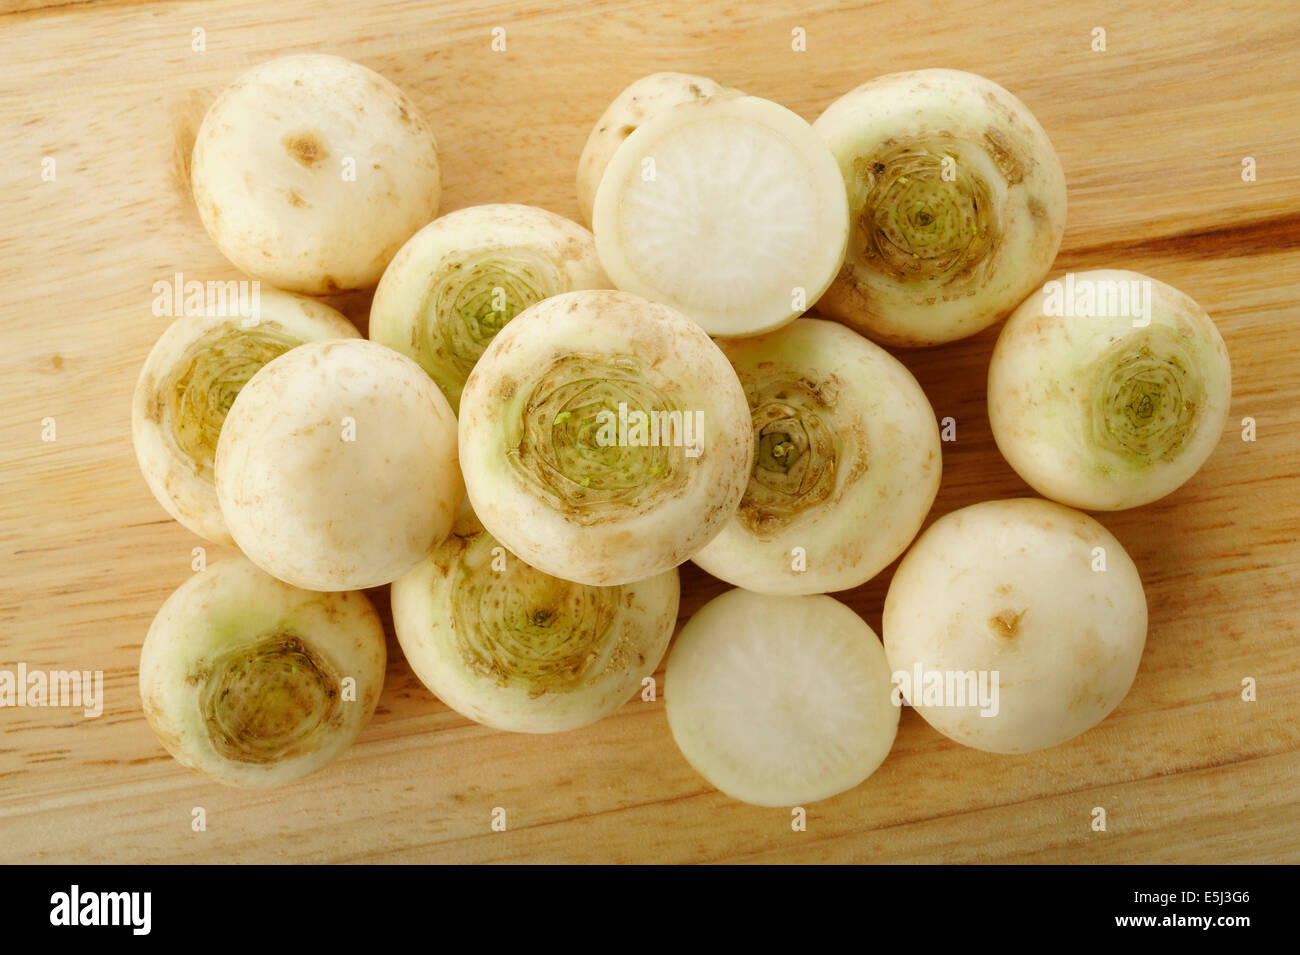 turnip on wooden kitchen board Stock Photo